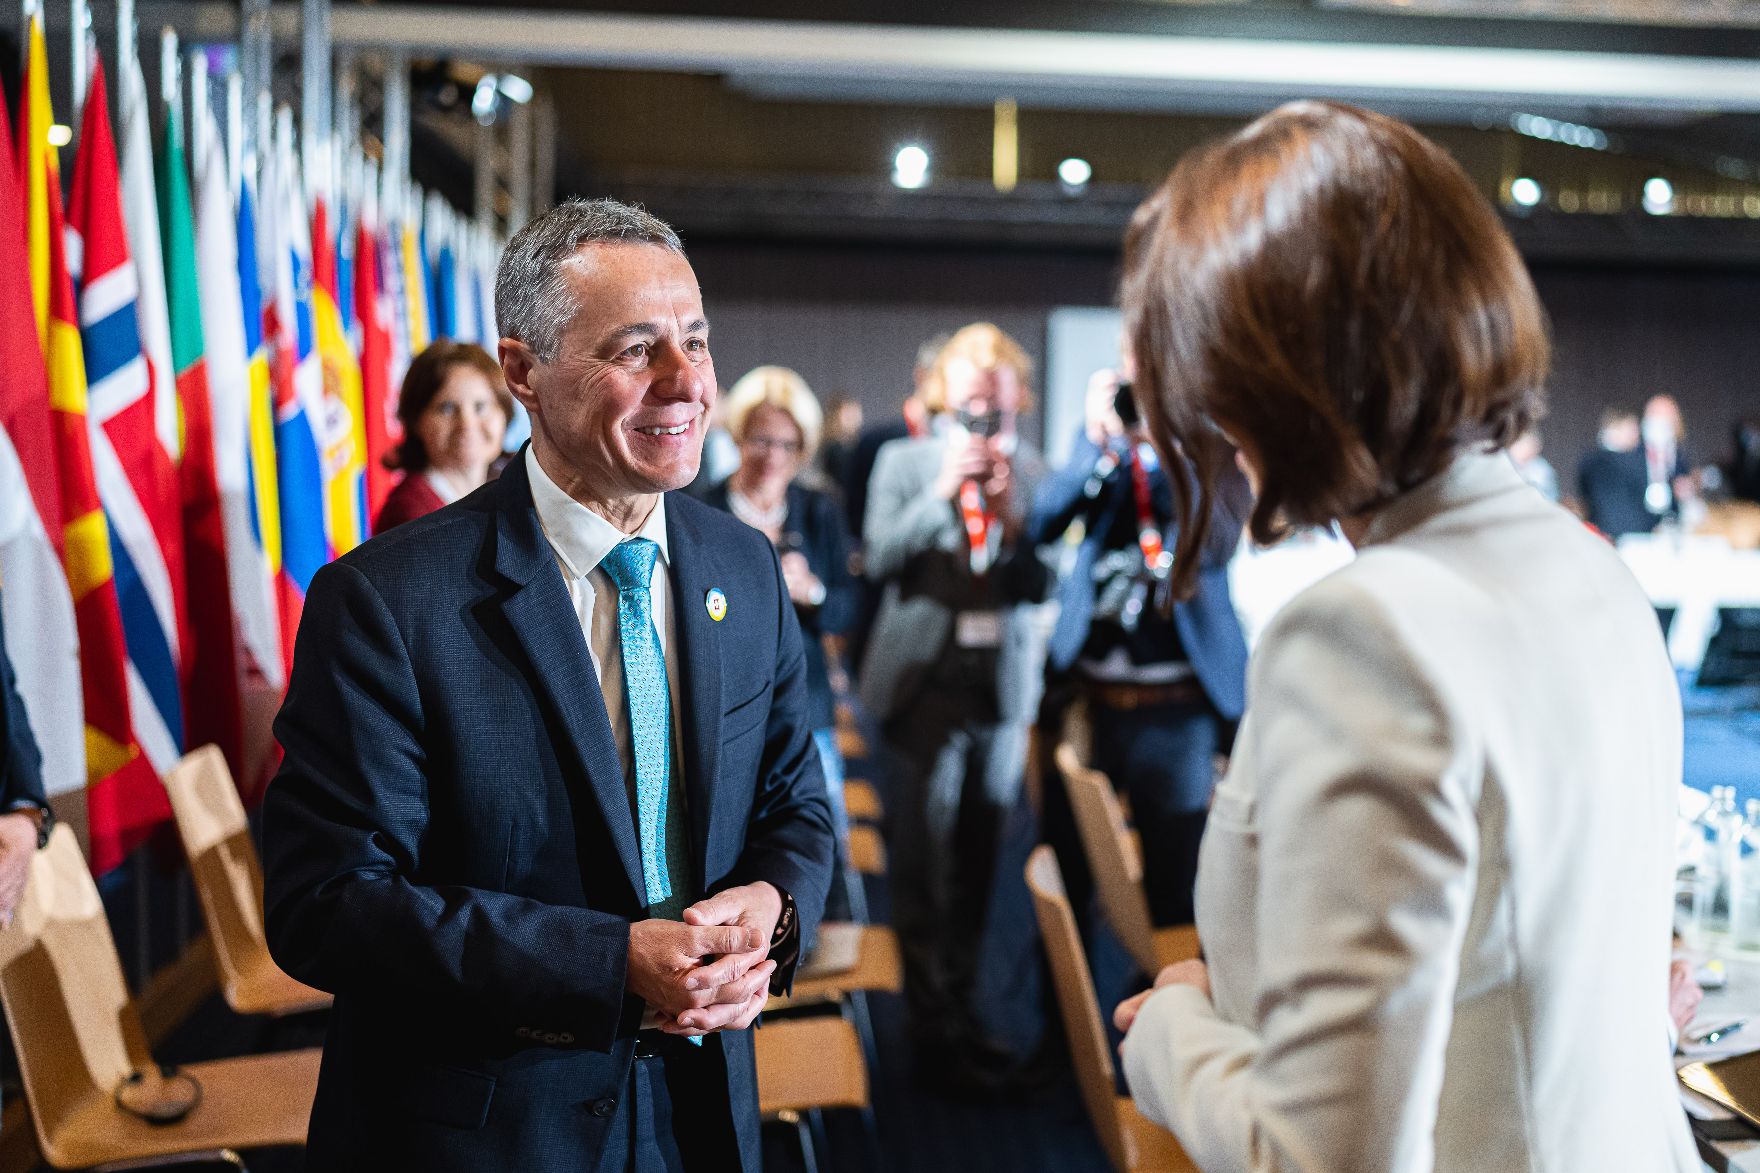 Am 05. Juli 2022 nahm Bundesministerin Karoline Edtstadler (r.) an der Ukraine Recovery Conference (URC 2022) in Lugano teil. Im Bild mit dem Präsidenten der Schweiz, Ignazio Cassis (l.).